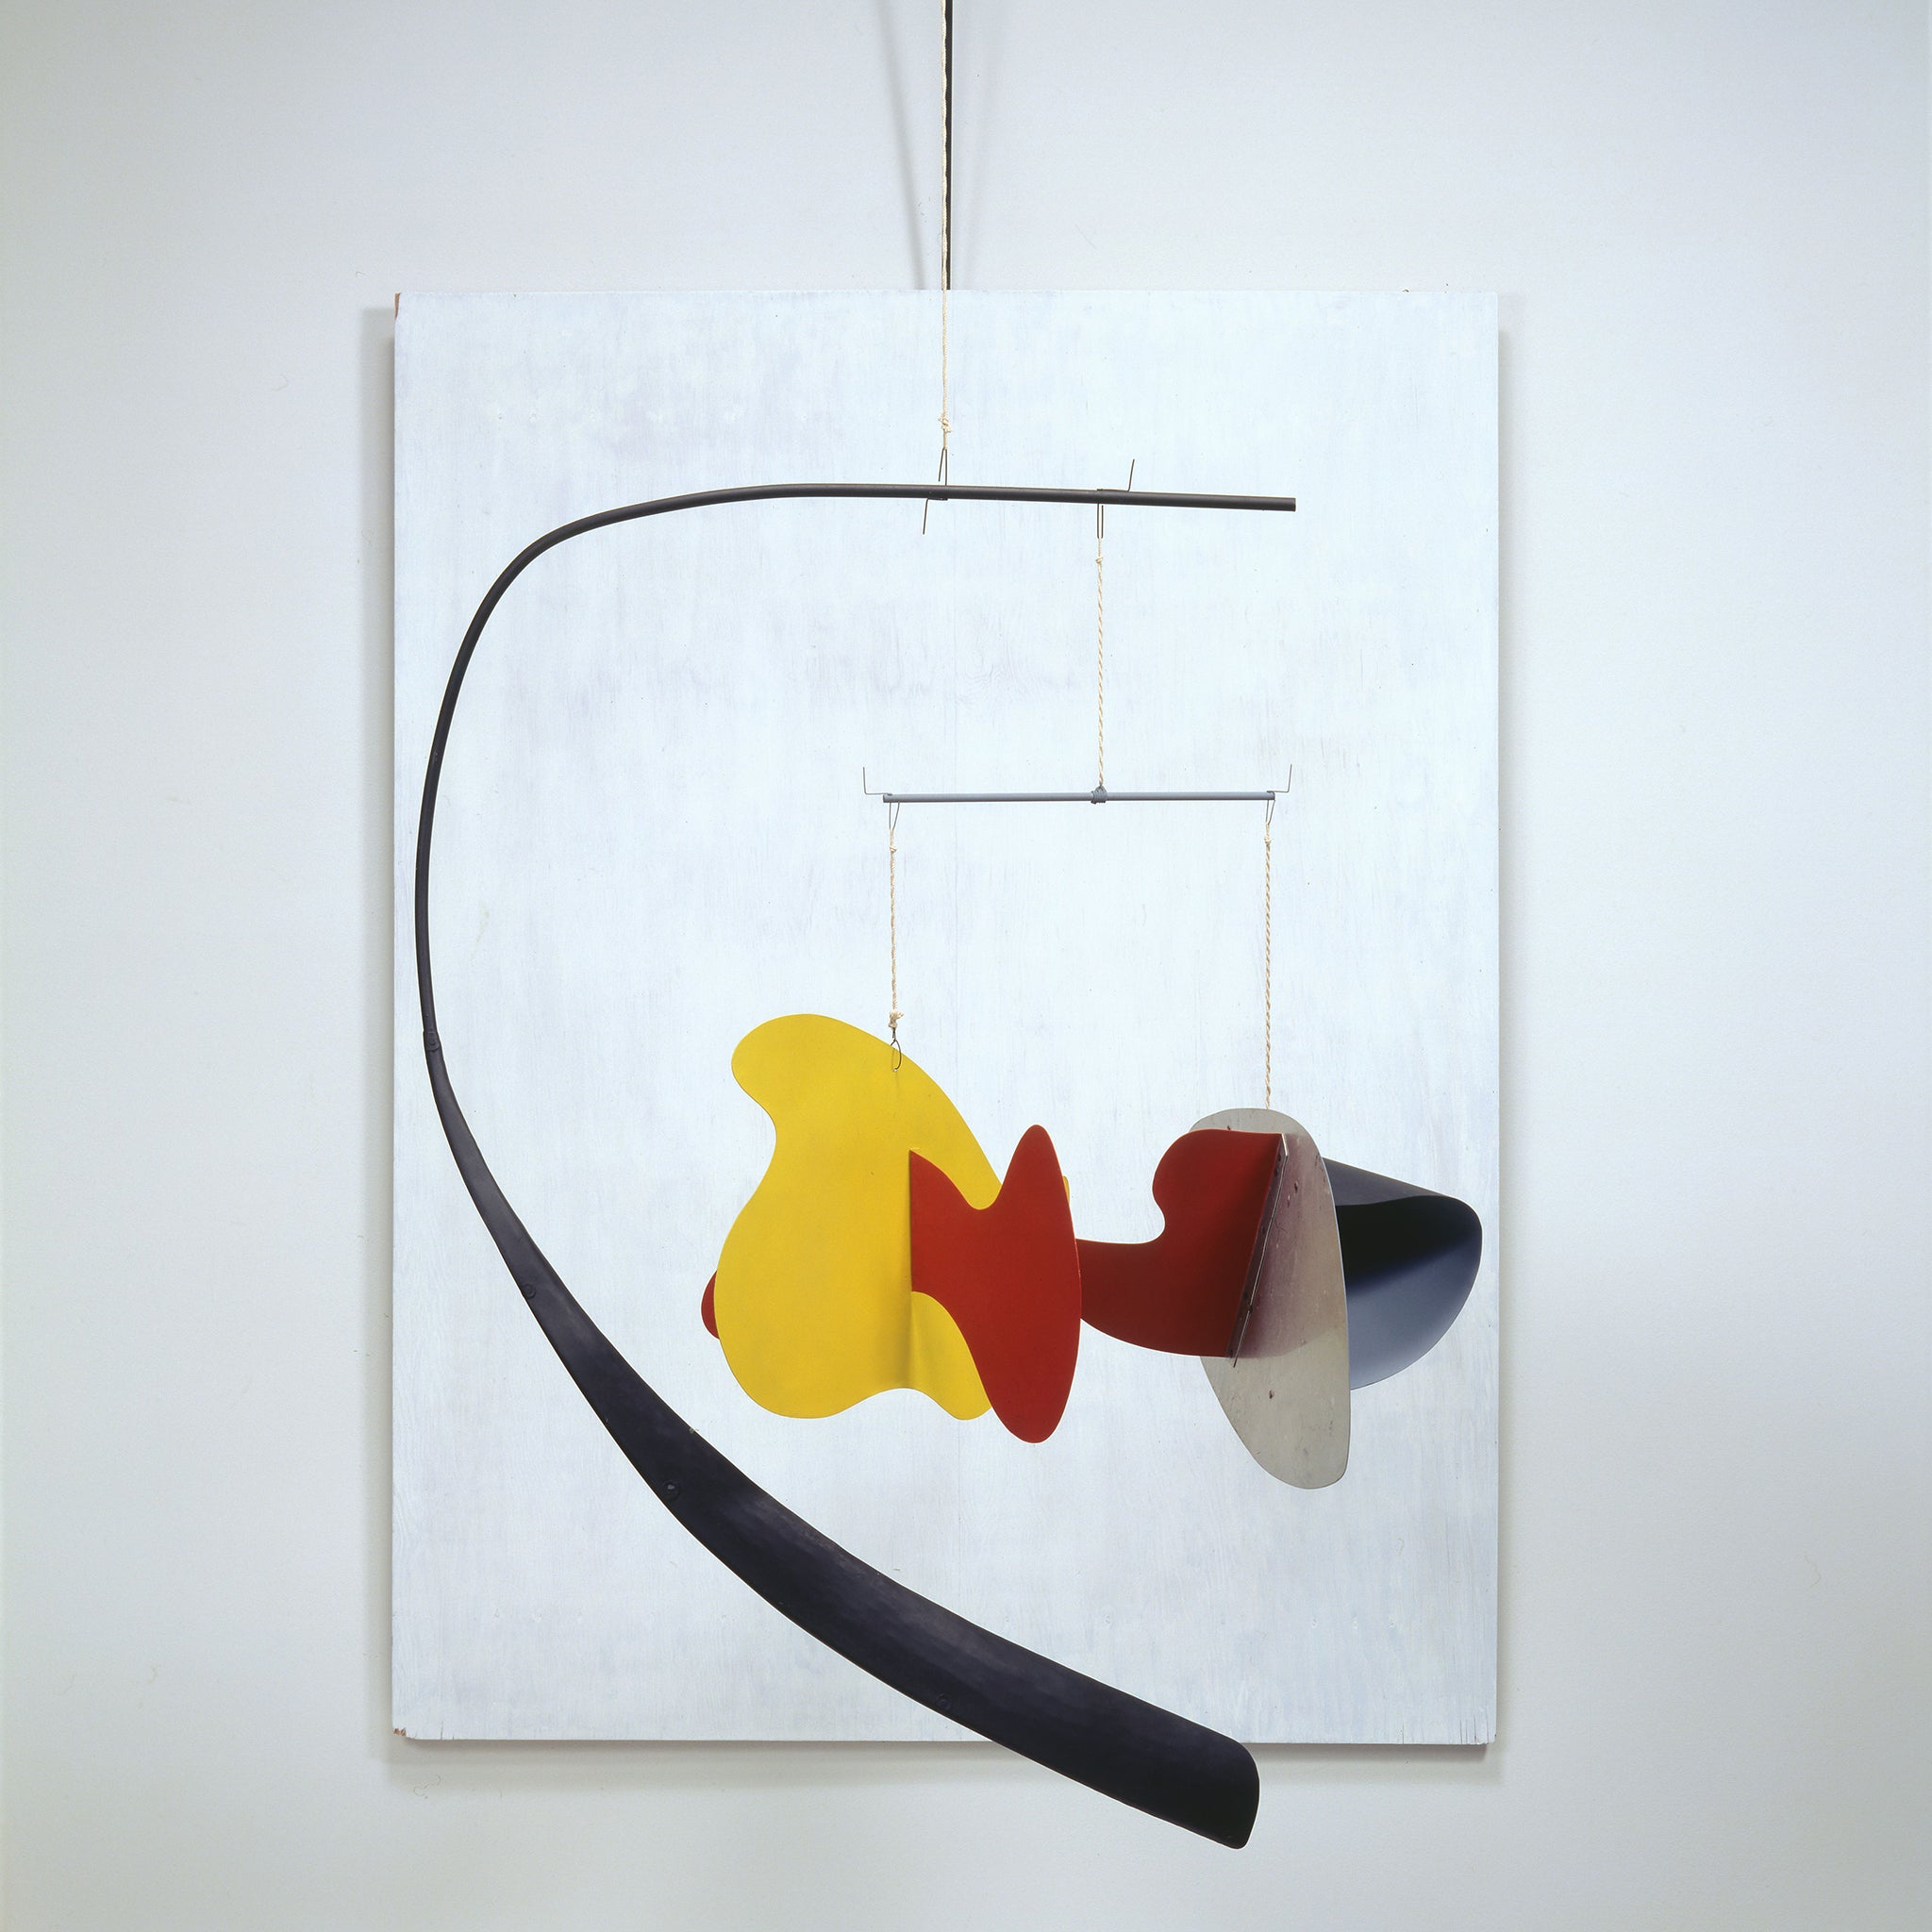 Alexander Calder (1898 - 1976) - White Panel 1936